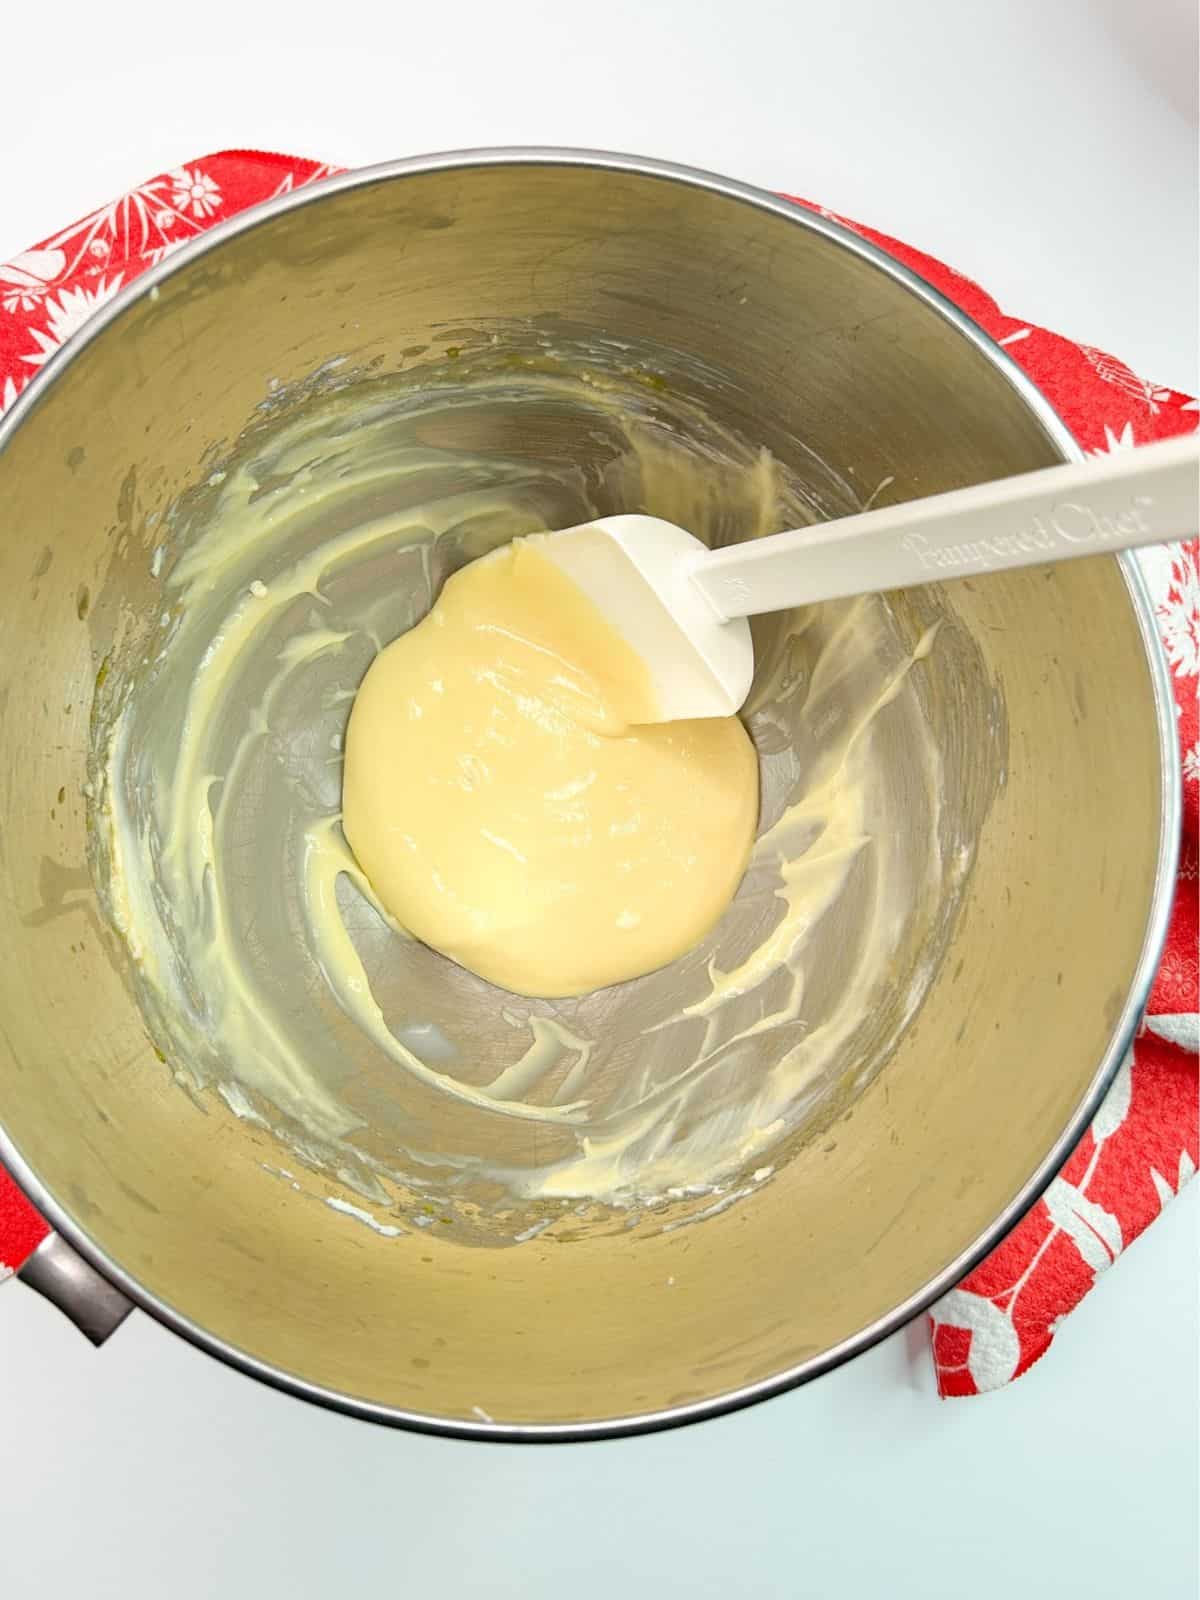 cream cheese mixture for homemade danish.